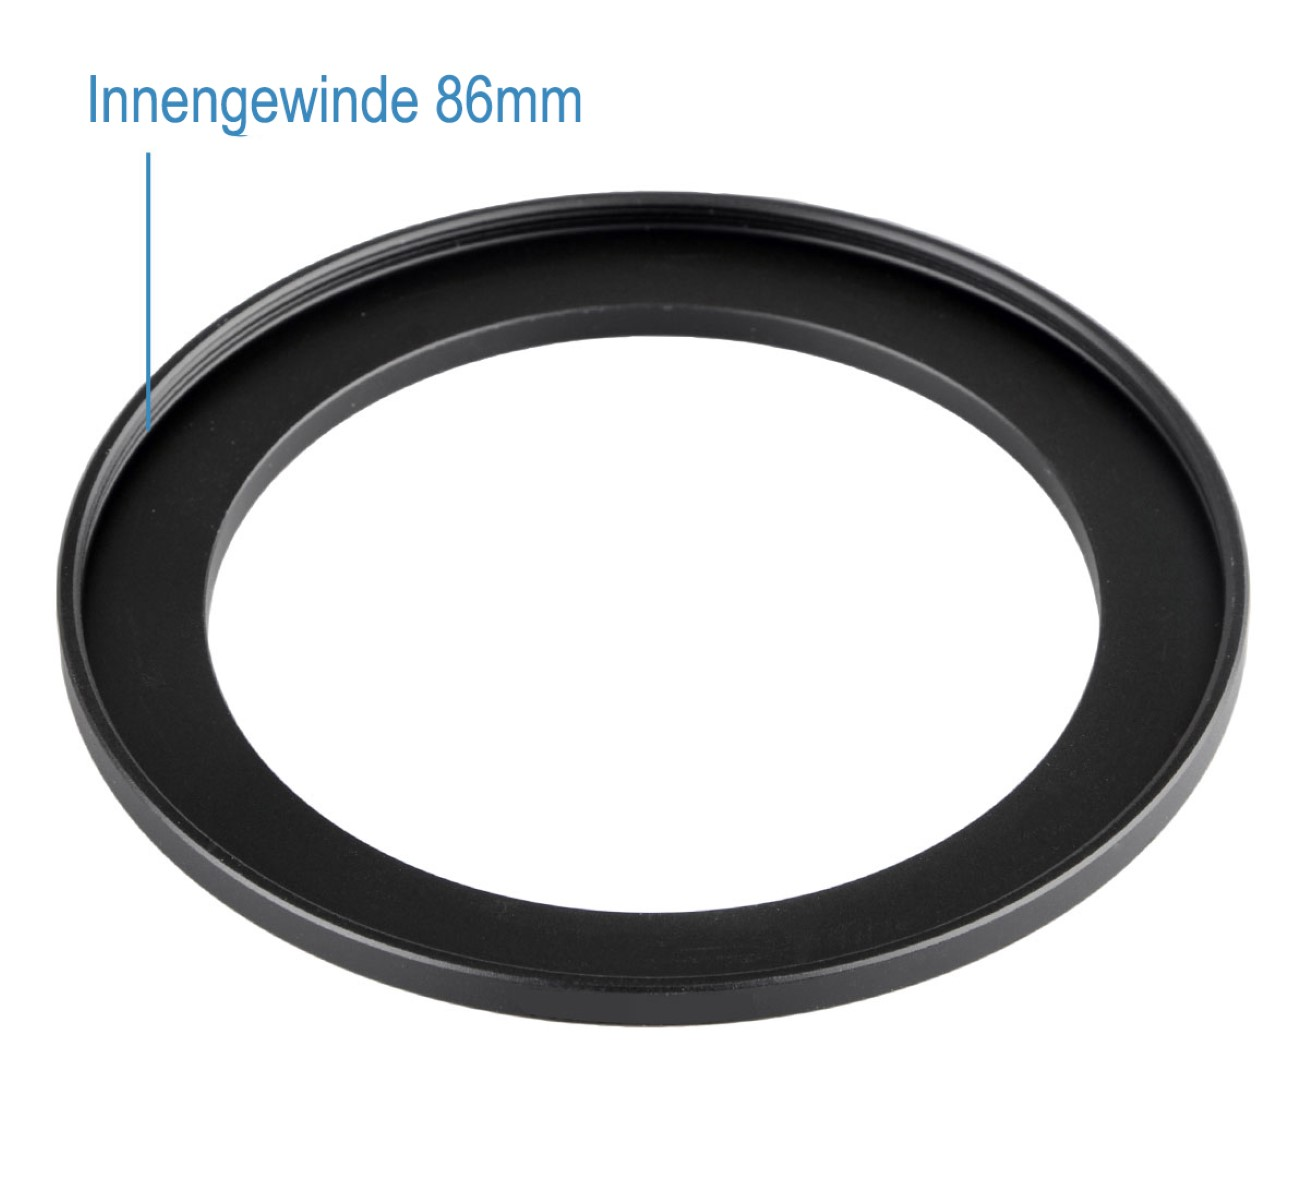 AYEX Step-Up Ring, Step-Up, Filtergewinde Objektive mit schwarz, für passend